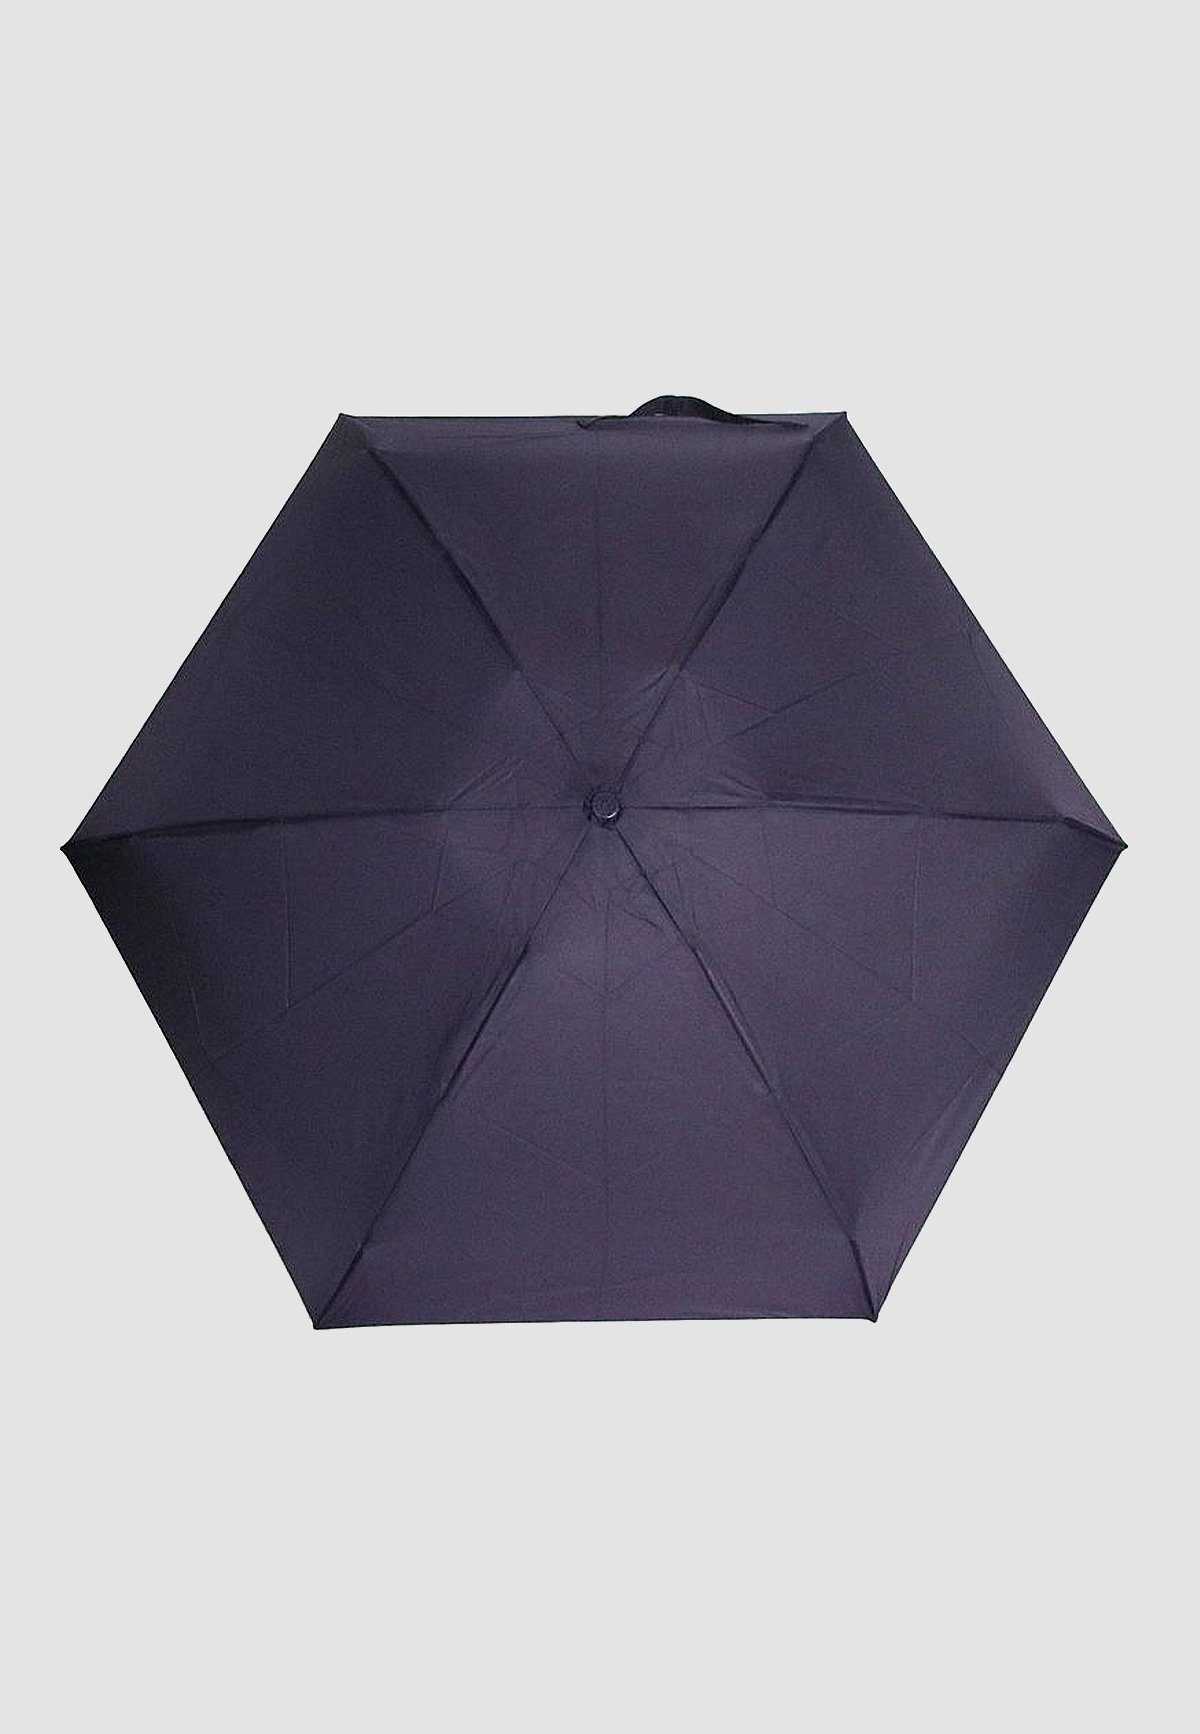 Kleiner Ausführung, Taschenregenschirm 4683 Leichte in ANELY Violett Taschen Regenschirm